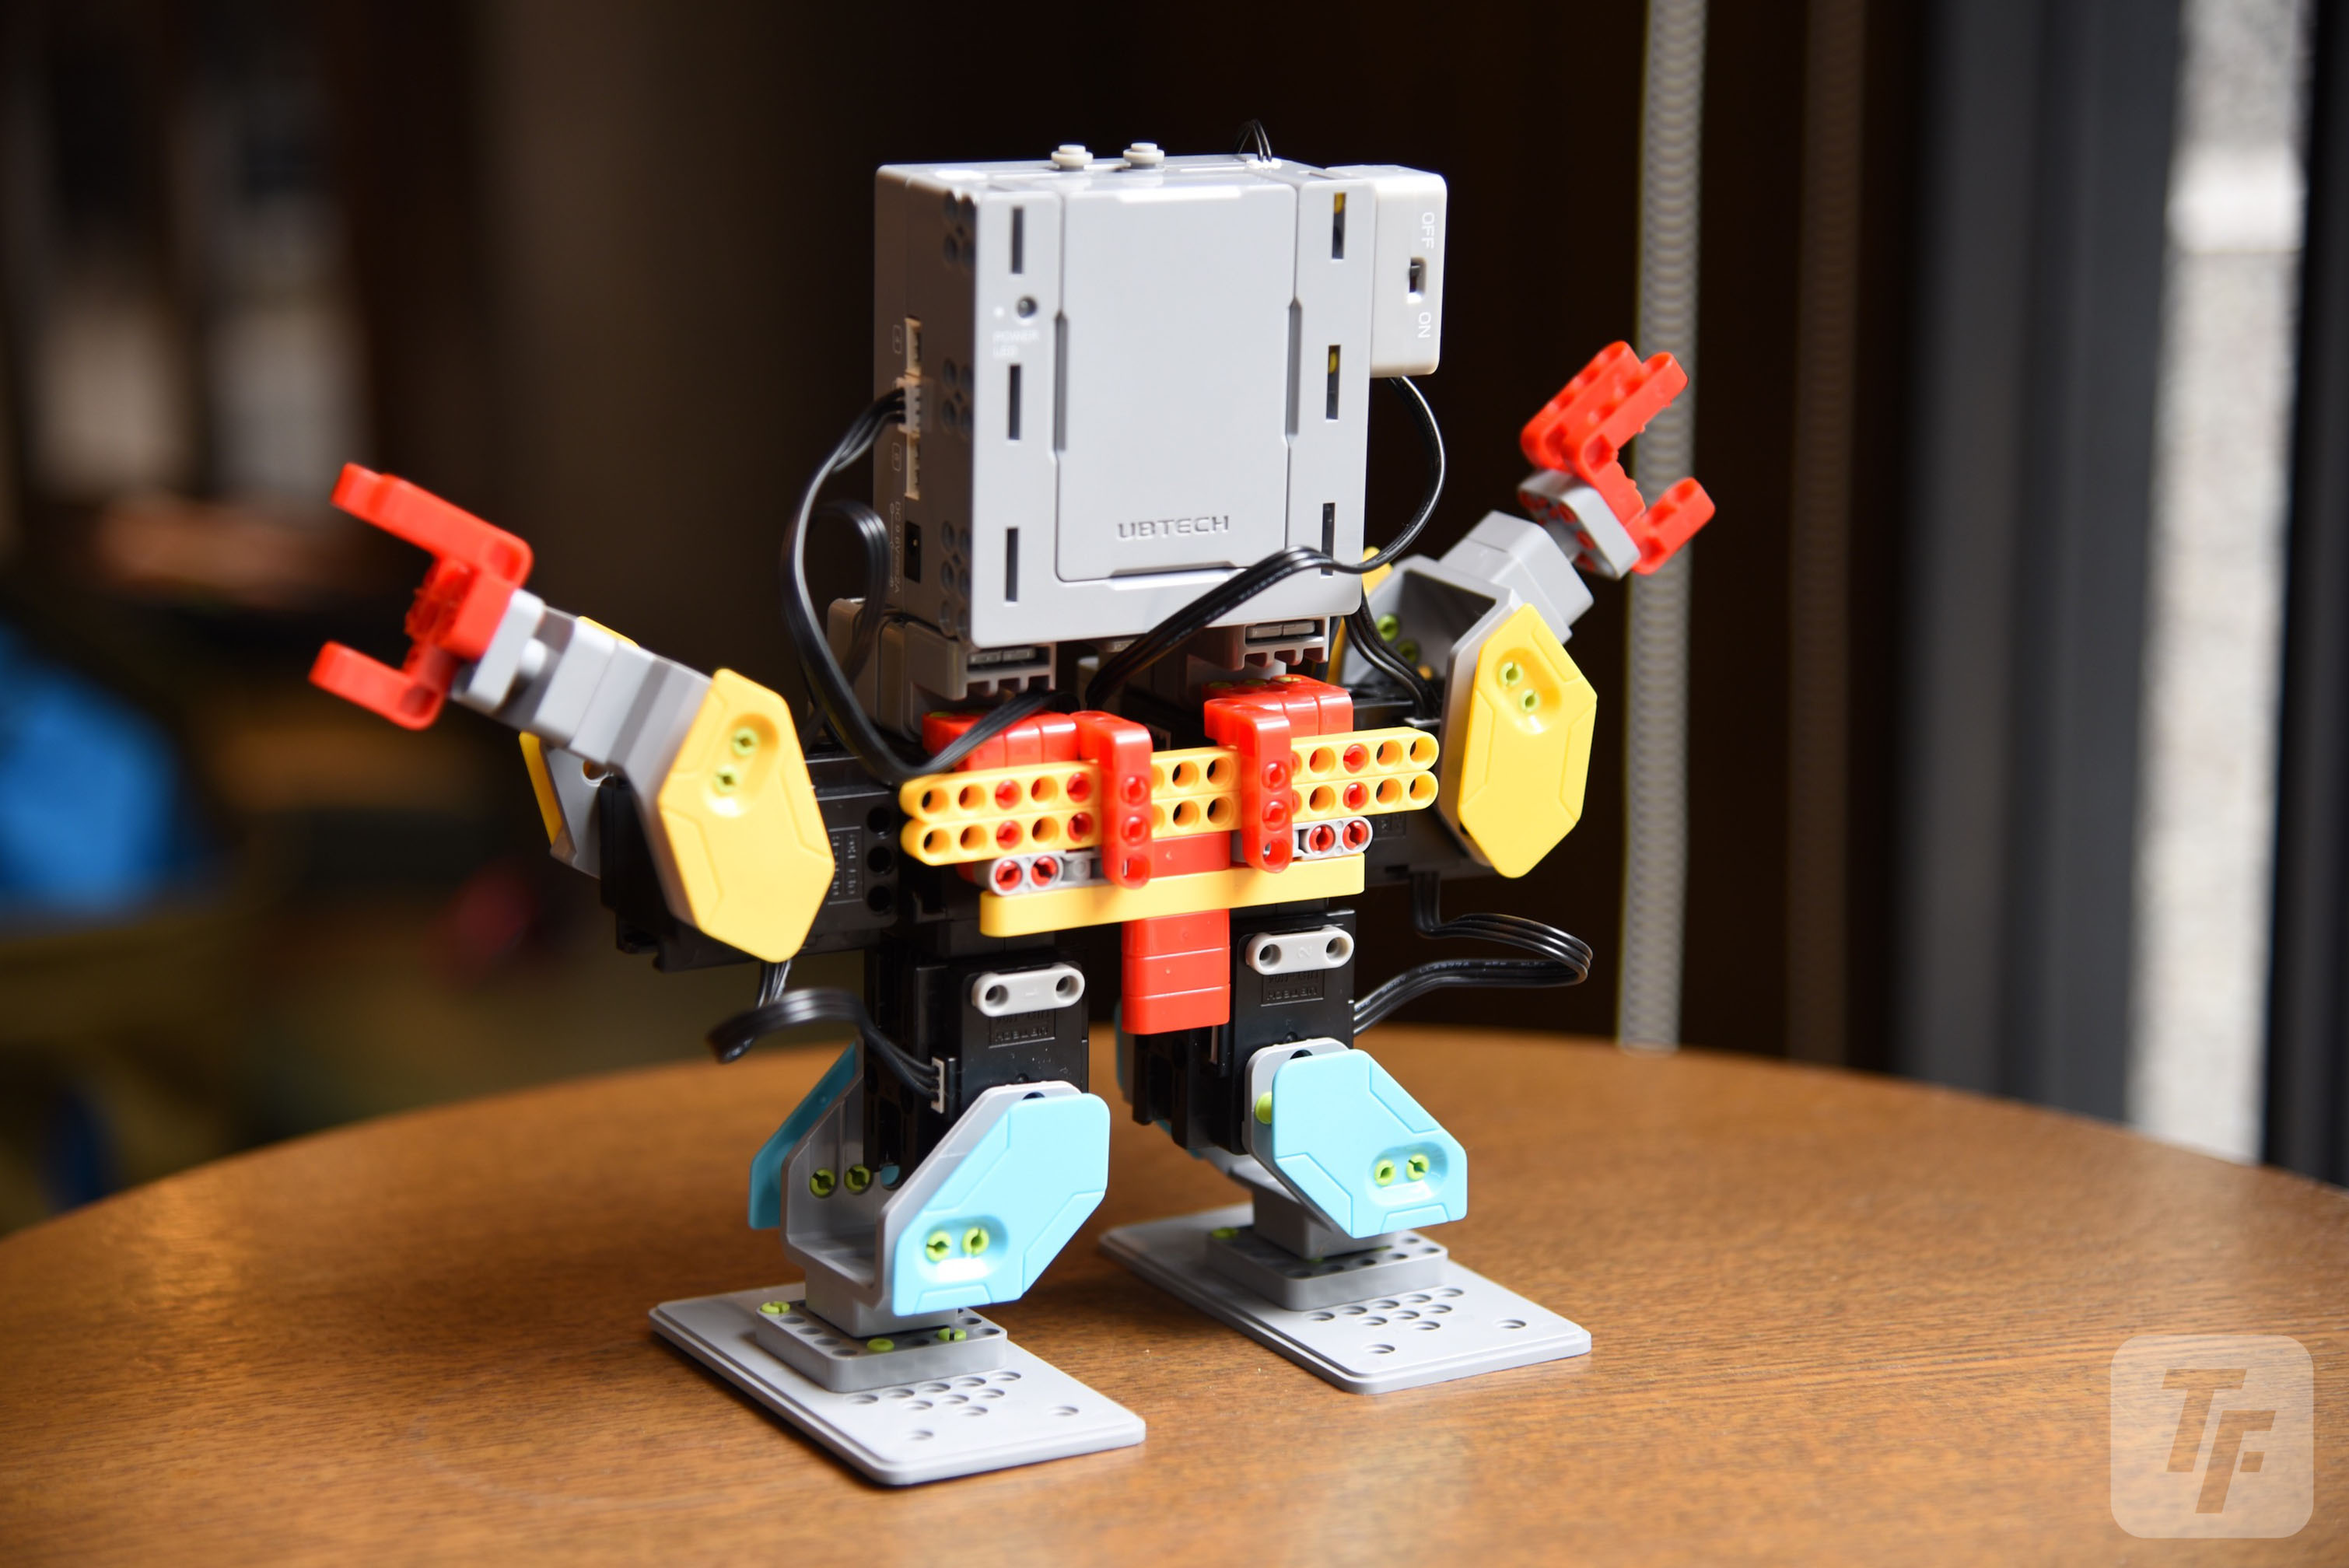 jimu robot机器人评测:让积木不仅是拼砌而已